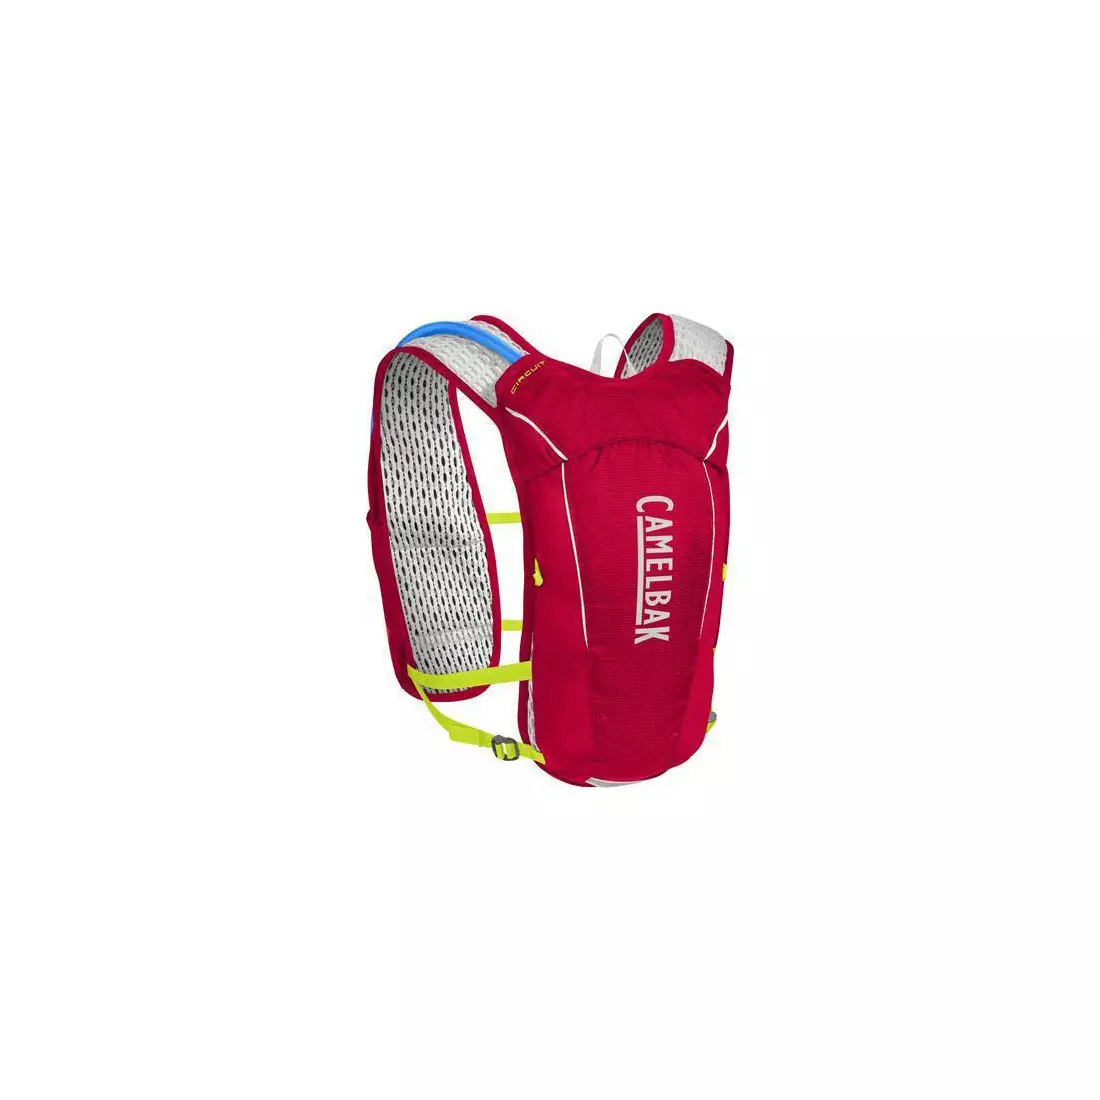 Camelbak SS18 běžecký batoh s vodním vakem Circuit Vest 50oz /1,5L Crimson Red/Lime Punch 1138601000